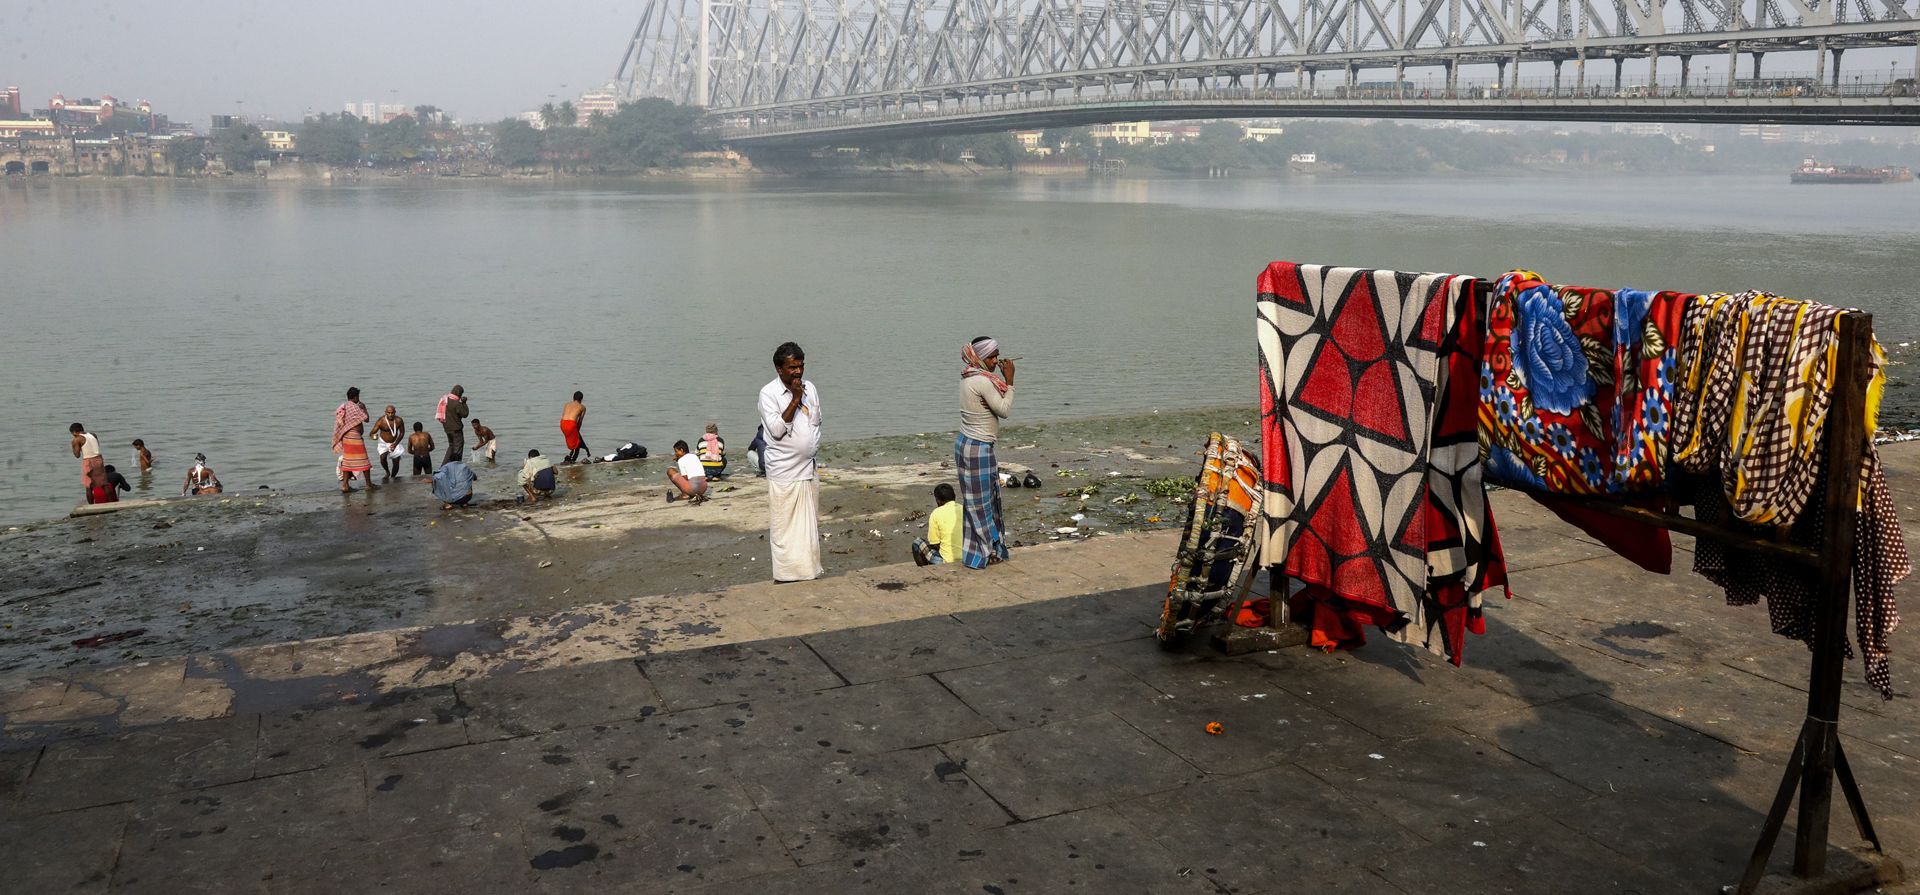 La gente extiende ropa para secarse mientras otras personas se bañan en el río Hooghly junto al puente Howrah en Calcuta, India, el lunes 17 de enero de 2022.